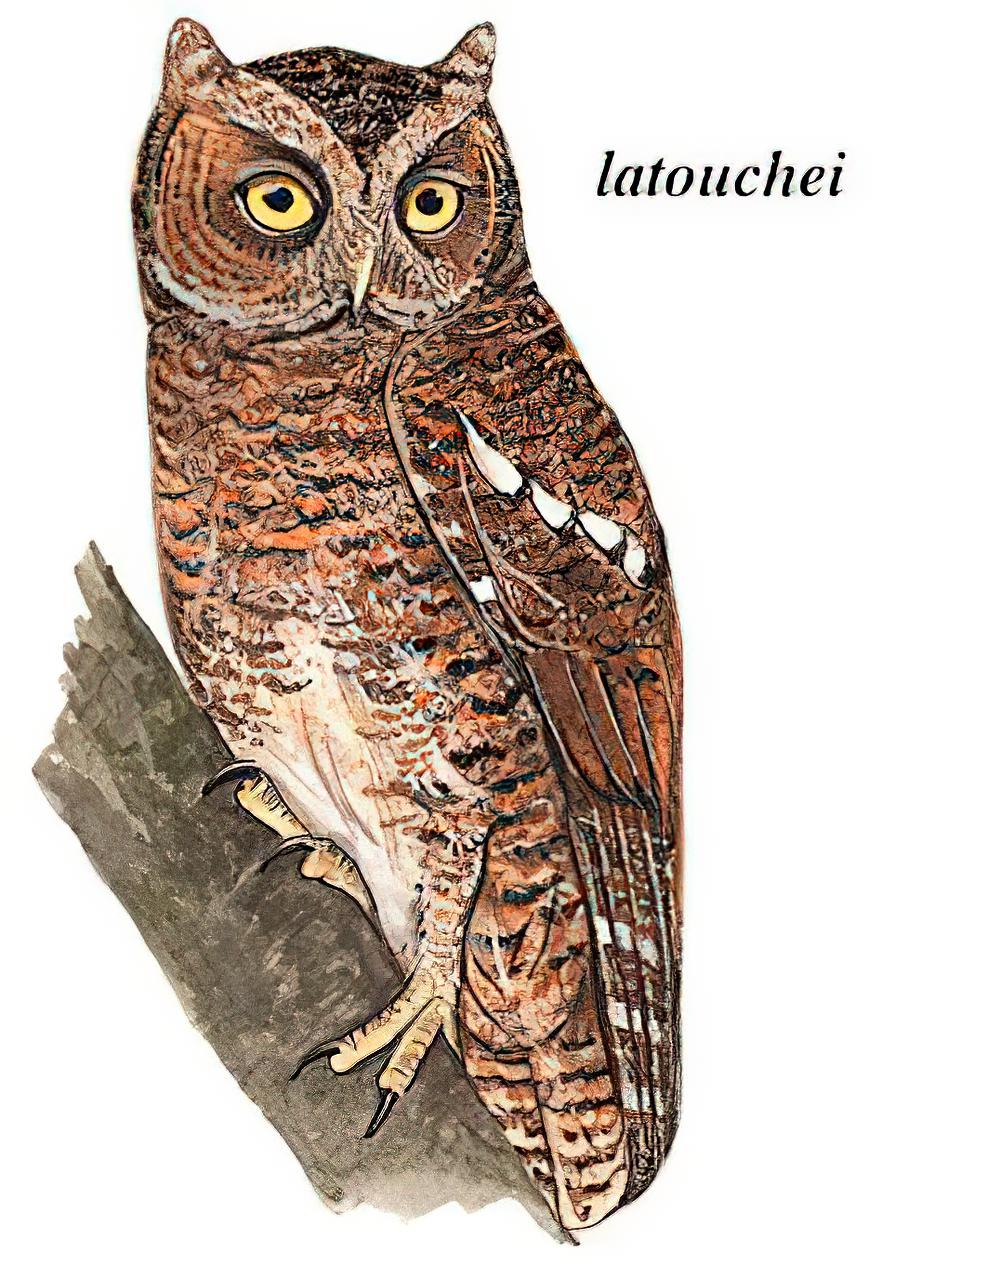 黄嘴角鸮 / Mountain Scops Owl / Otus spilocephalus